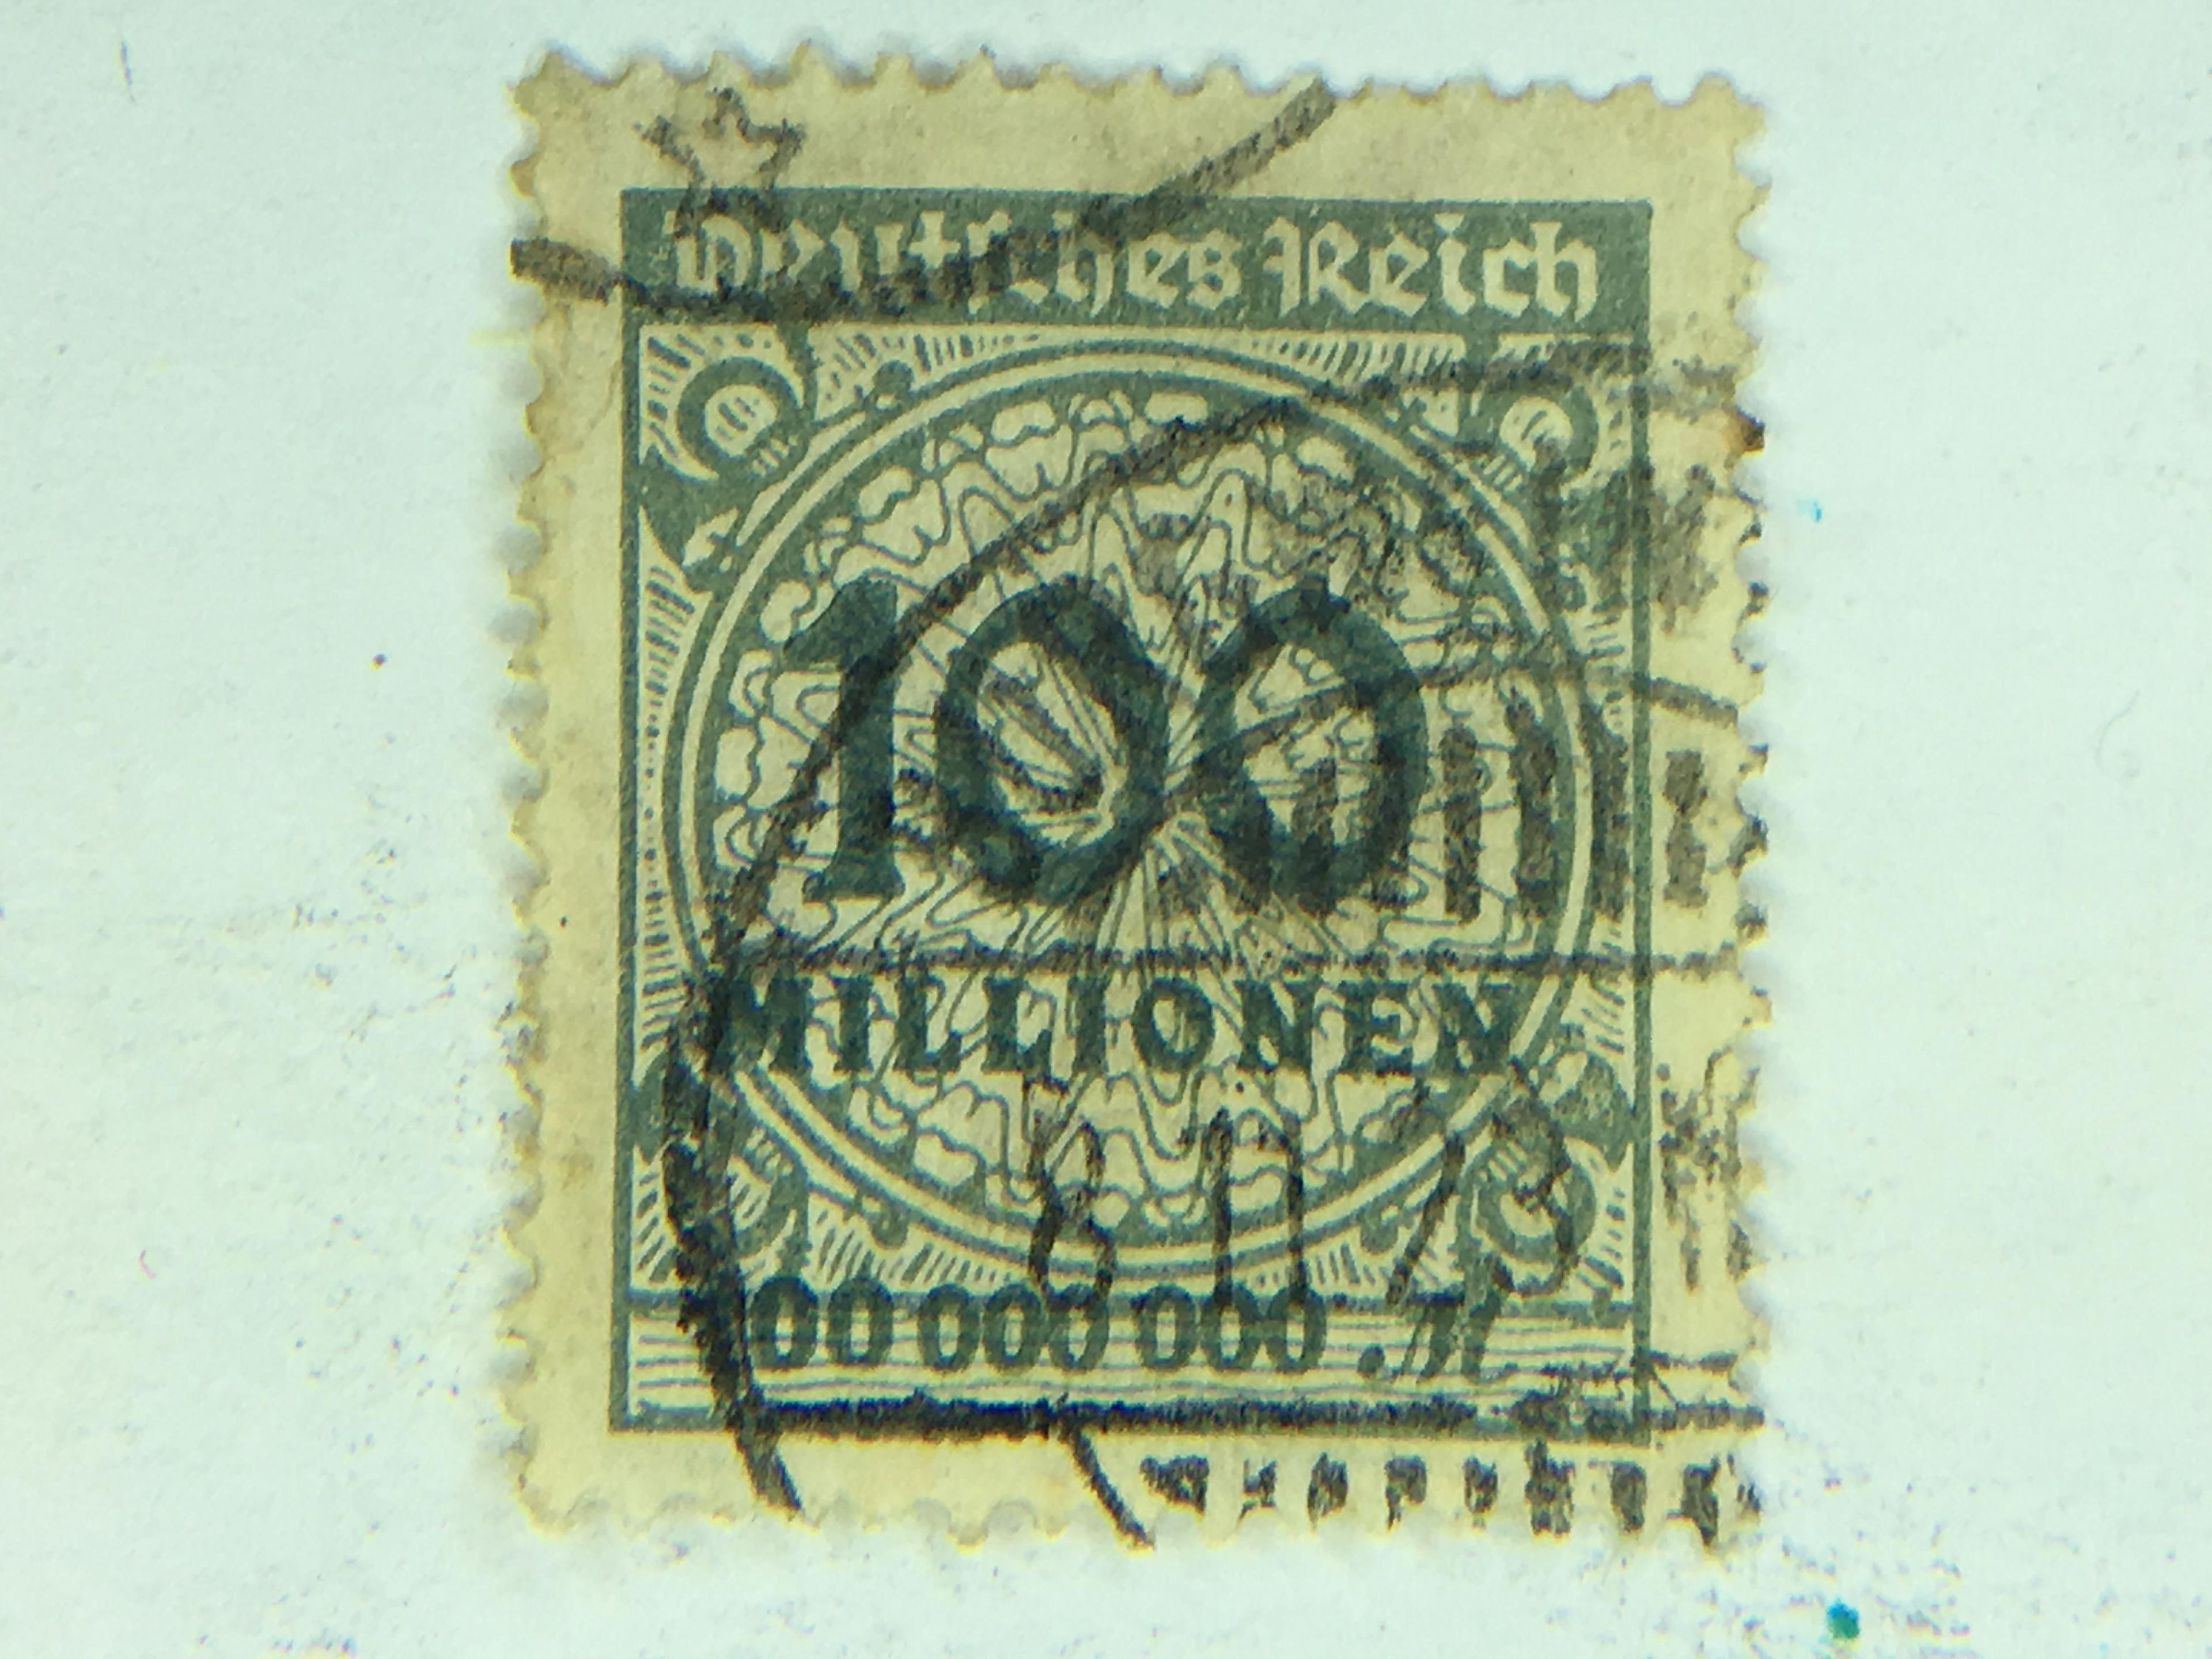 100 Million Reisch Mark Postage Stamp